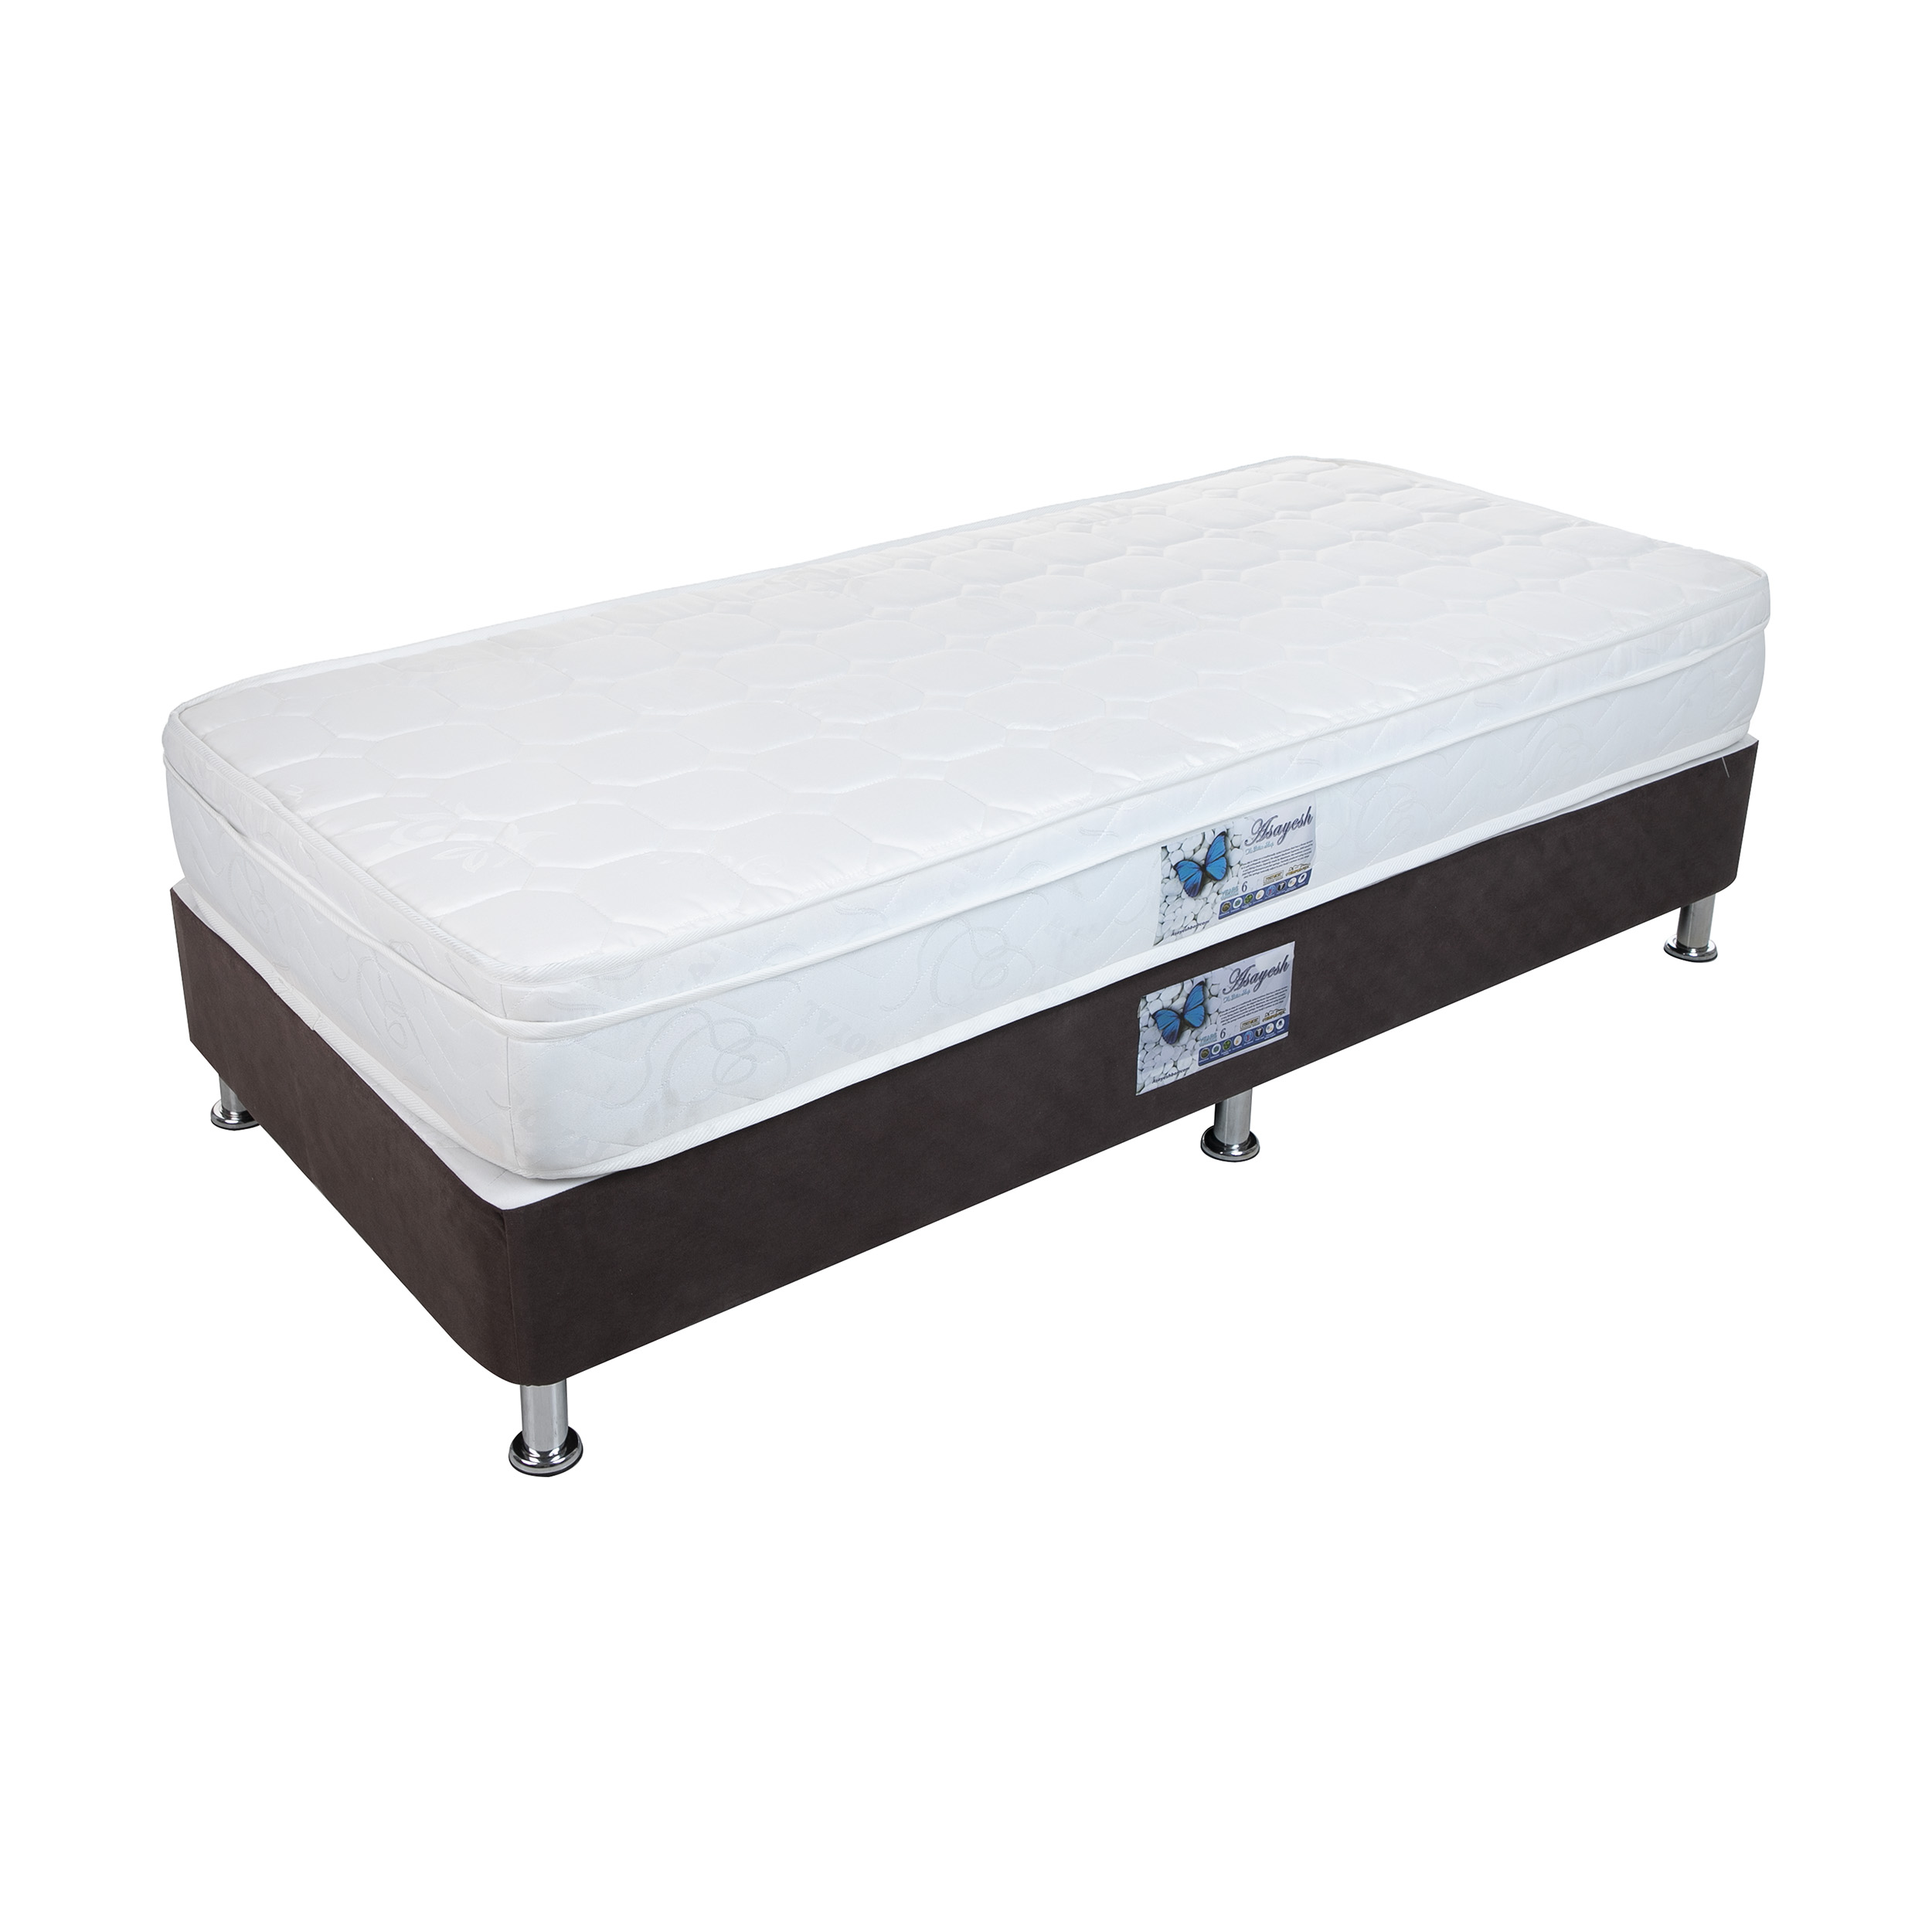 تخت خواب یک نفره آسایش باکس مدل AKA152 به همراه تشک طبی فنری سایز 200 × 120 سانتی متر